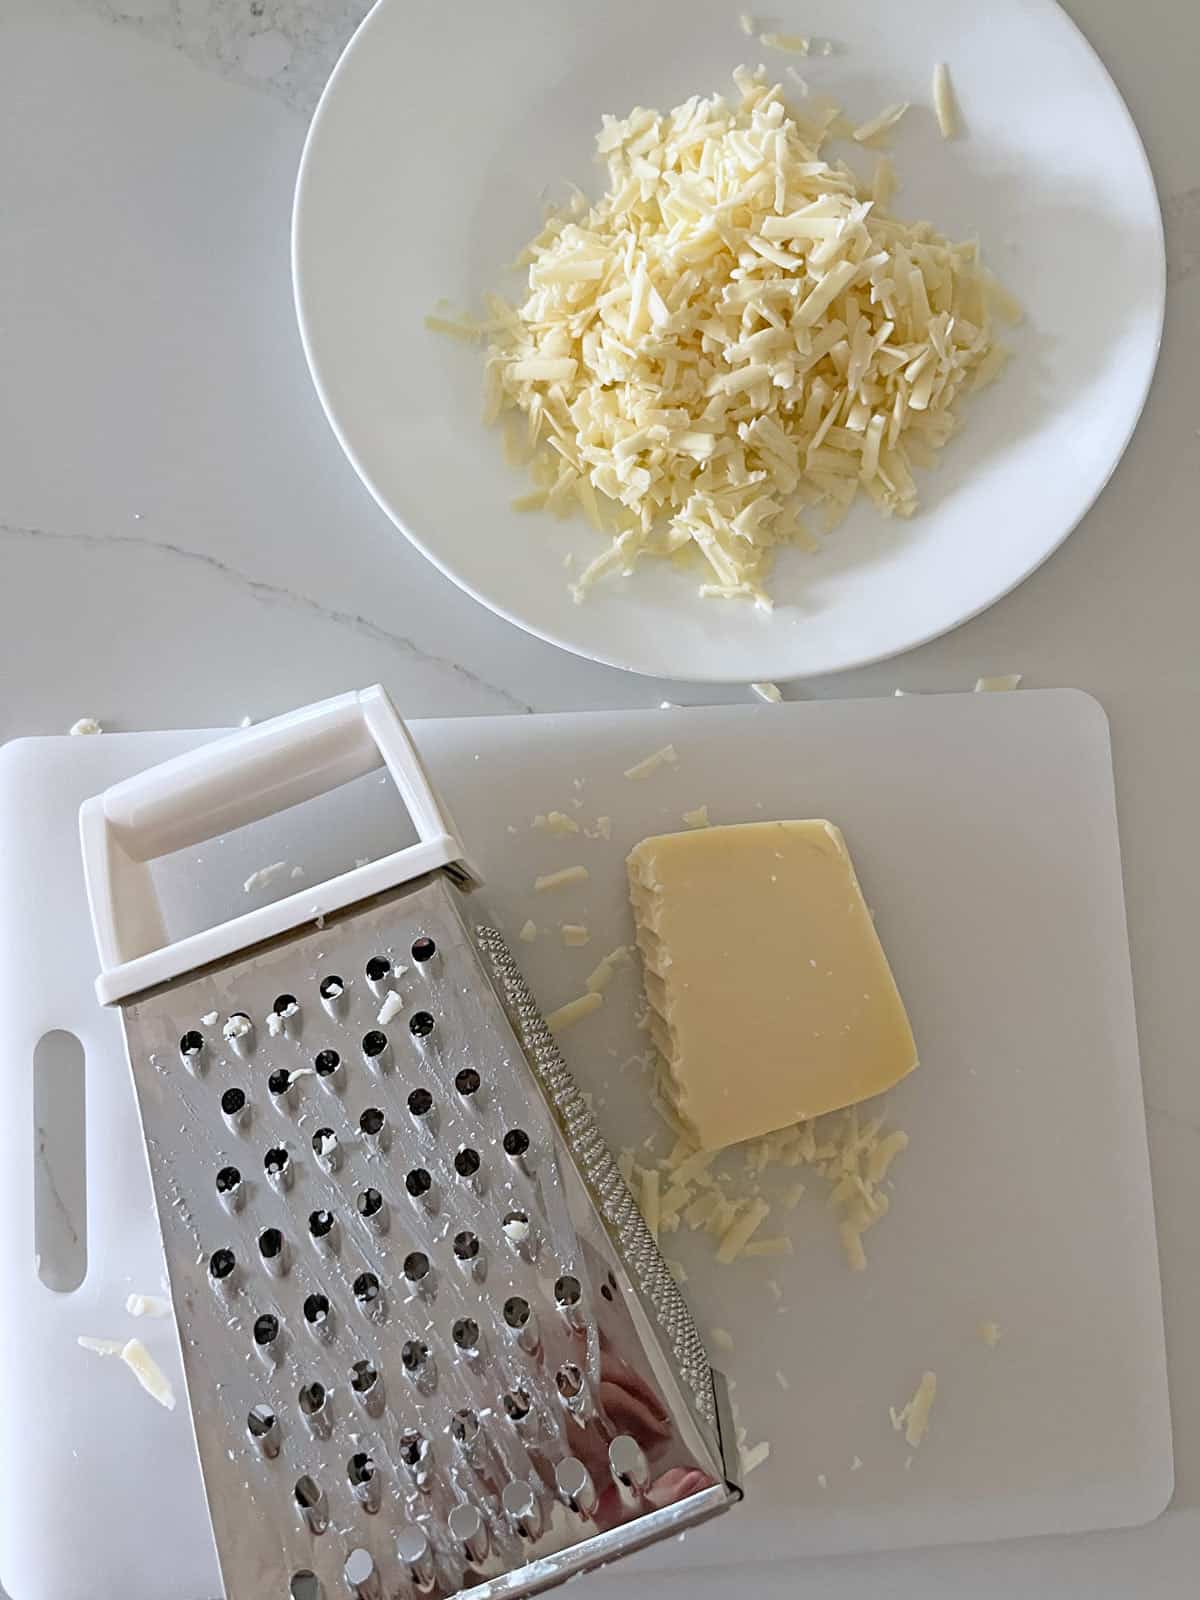 Shredded Gruyere cheese.